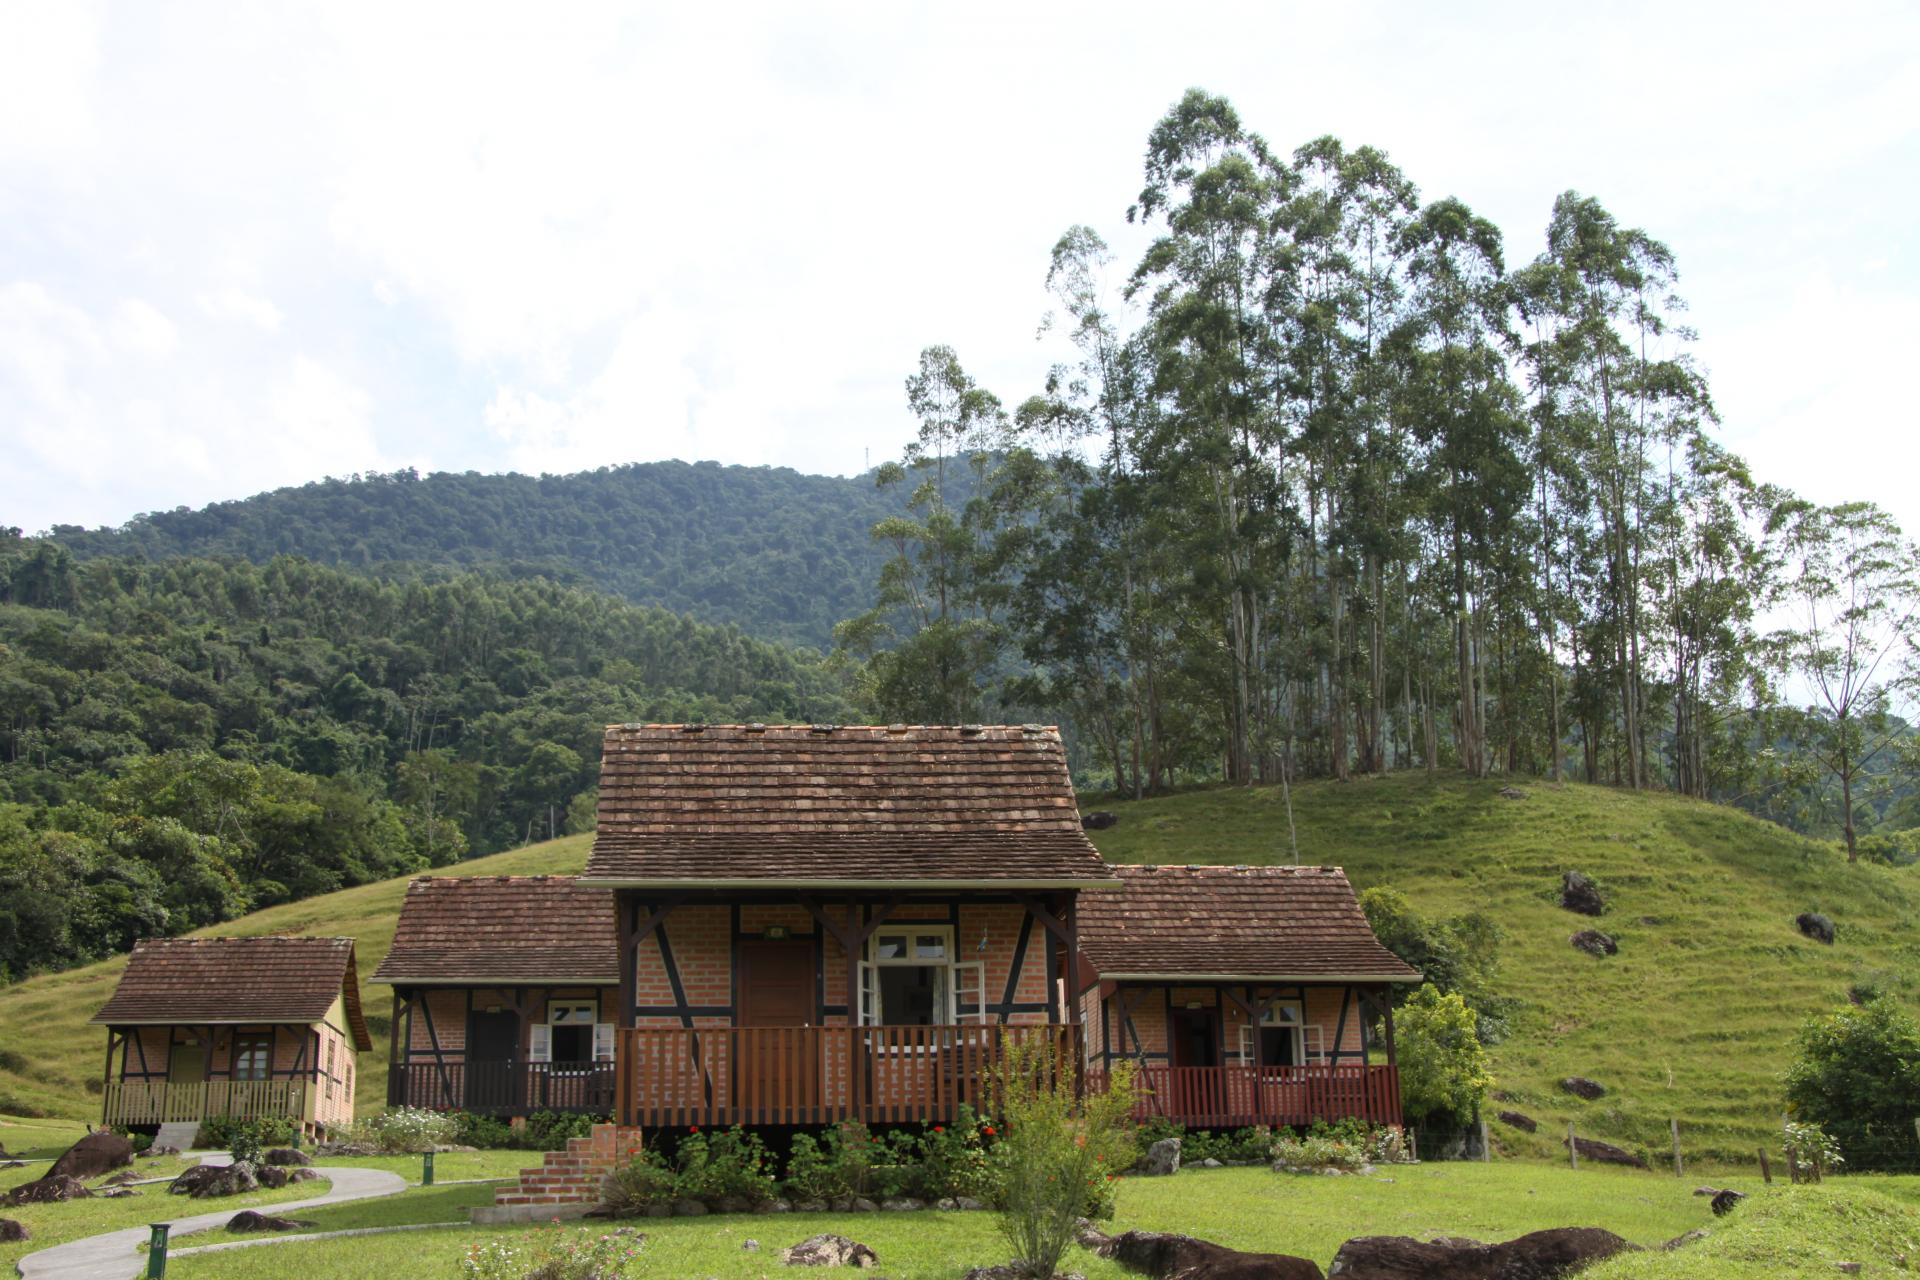 Typische Landschaft im Vale Europeu im Bundesstaat Santa Catarina